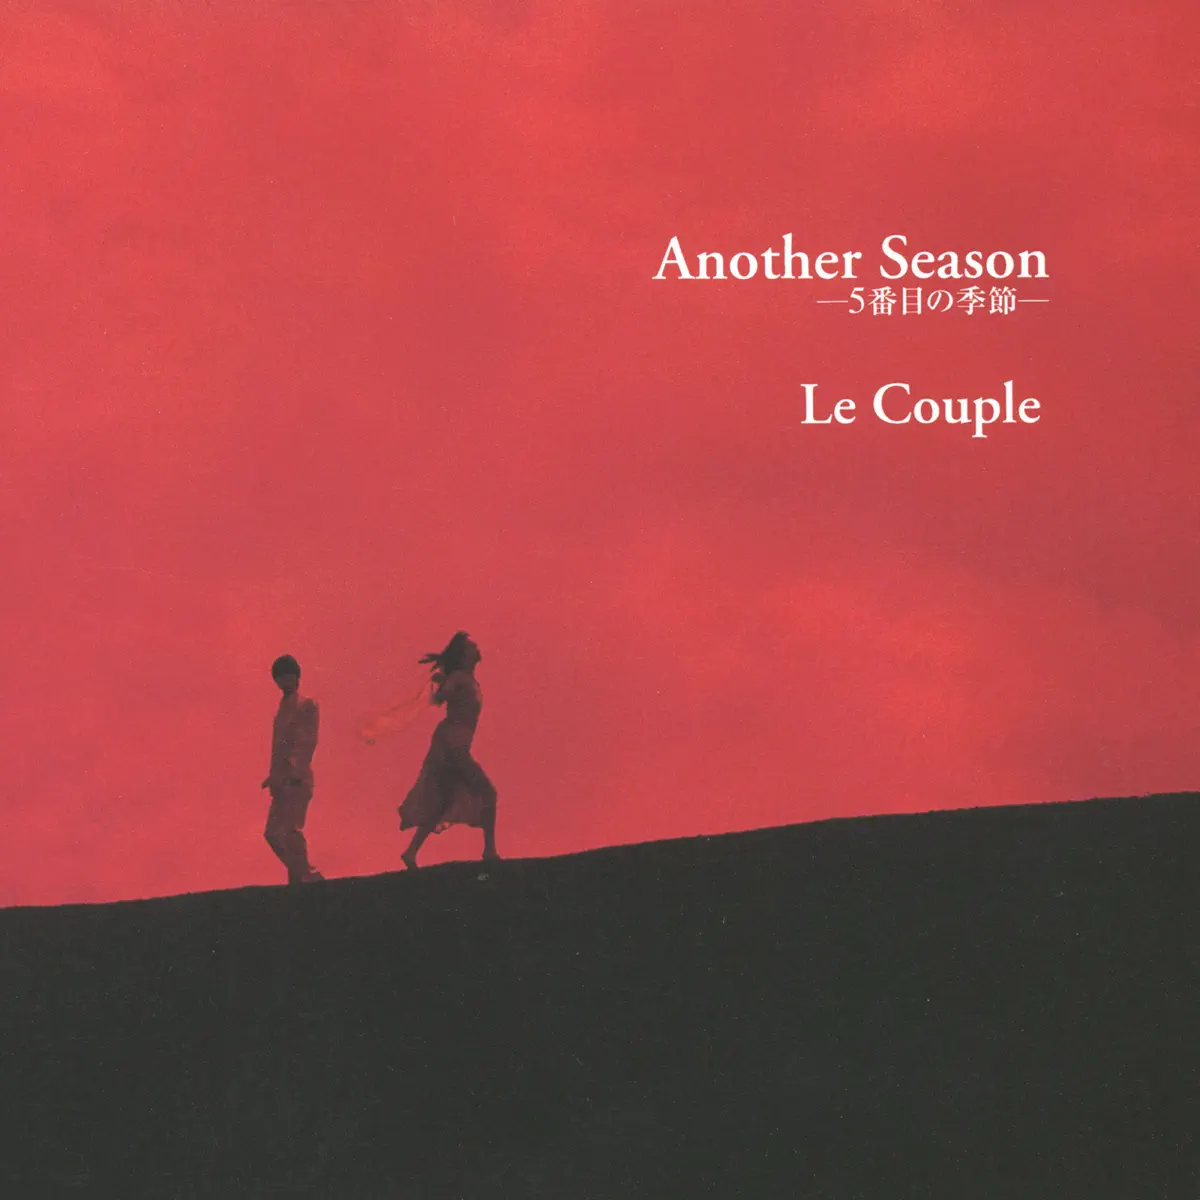 Le Couple - Another Season ~5番目の季節~ (1997) [iTunes Plus AAC M4A]-新房子